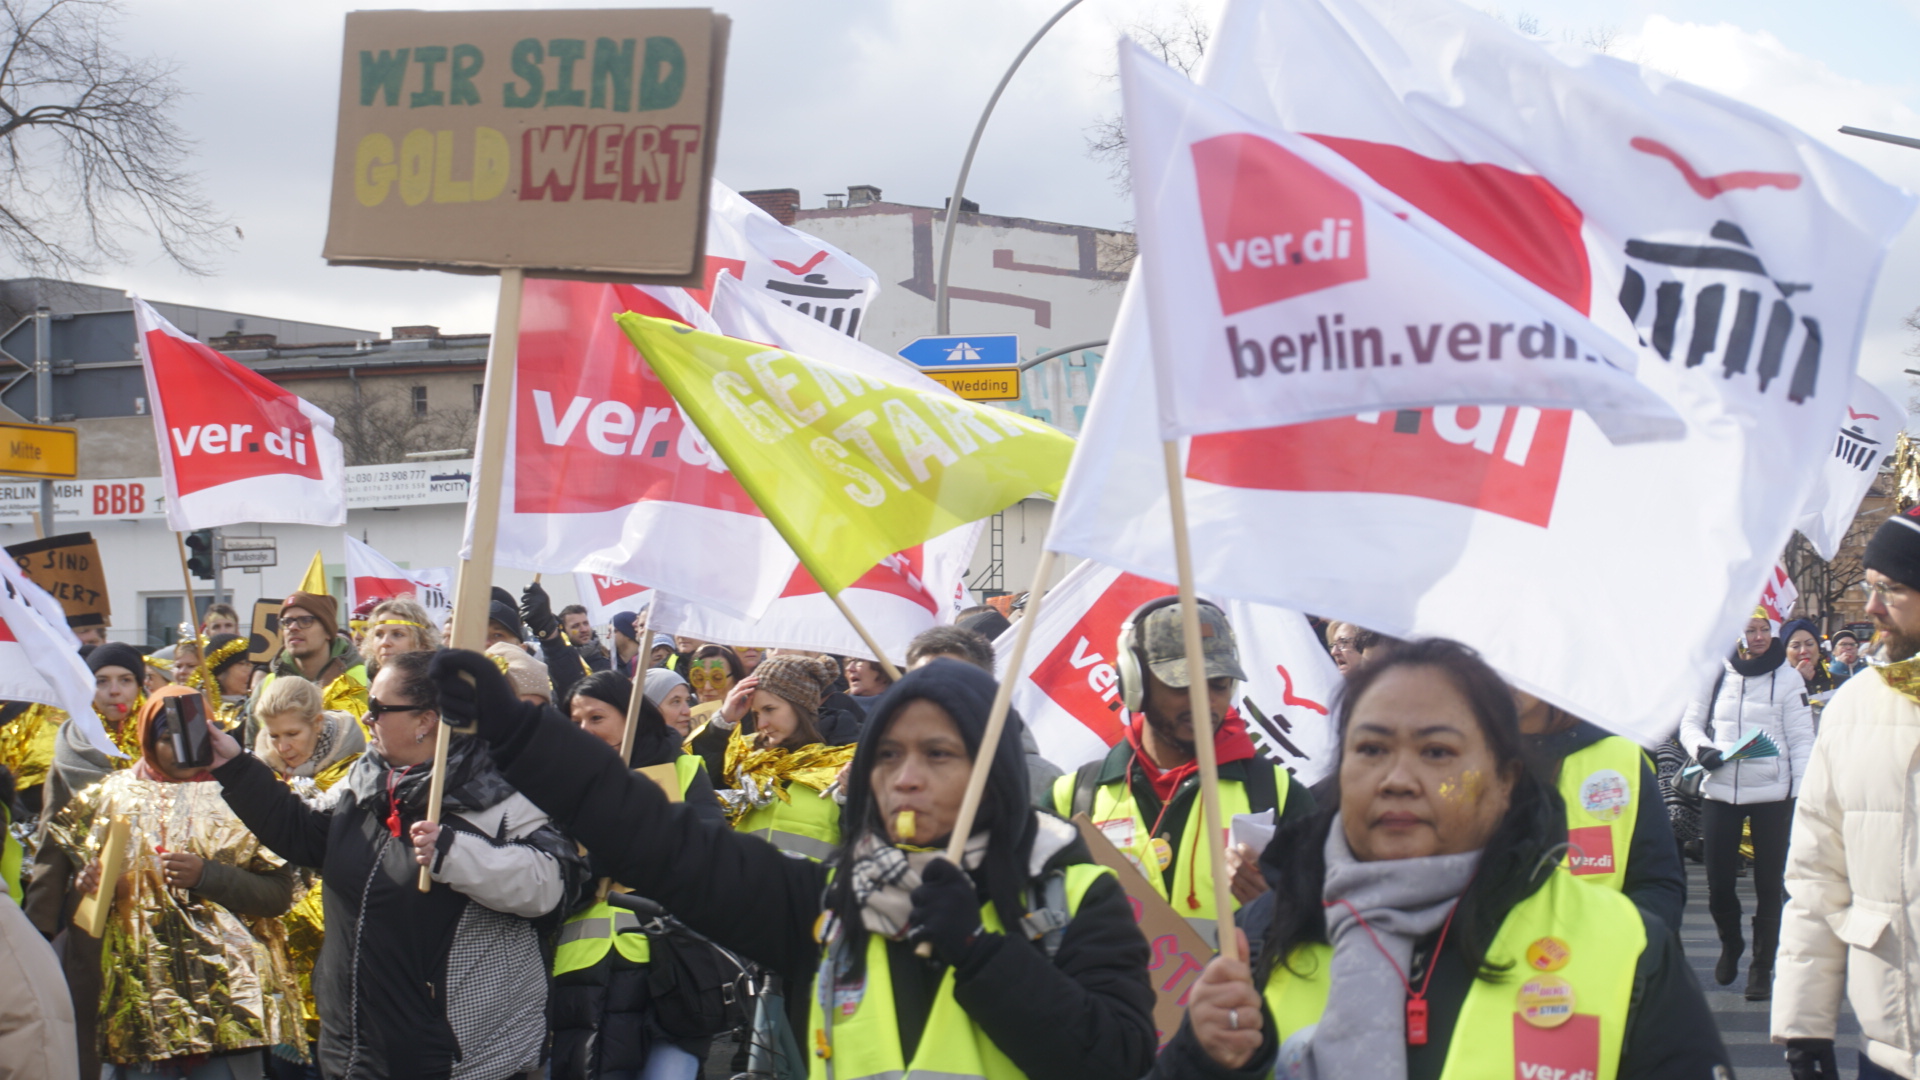 Für gemeinsame Demonstrationen von ver.di und GEW gegen die Kürzungen in Berlin!